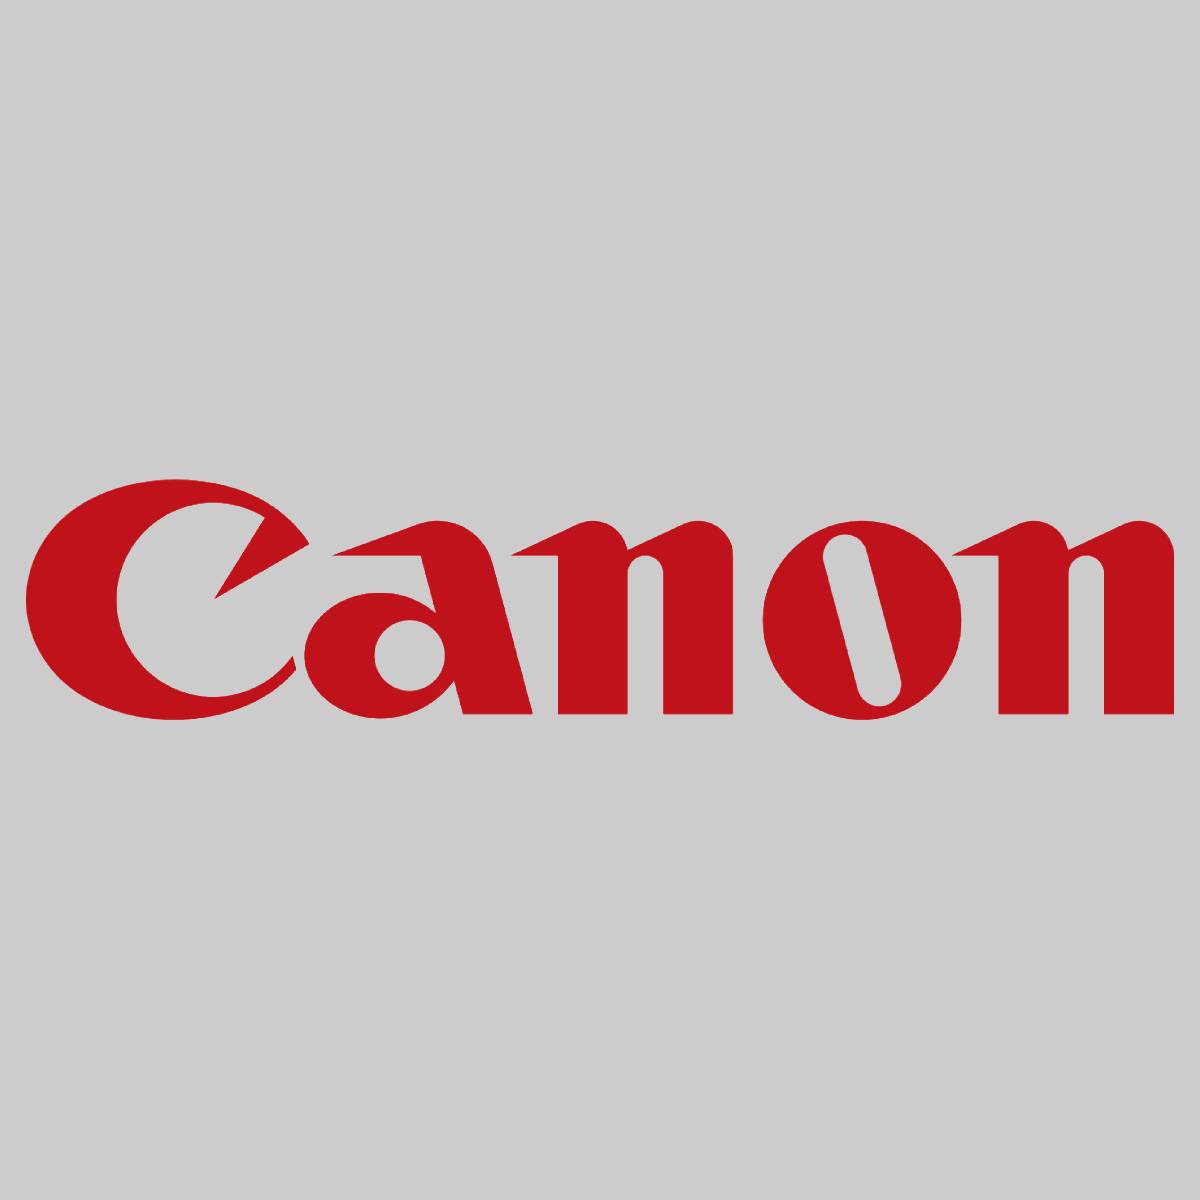 "Original Canon C-EXV34 Tambour Noir 3786B003 imageRunner C 2100 IR-C 2100 S